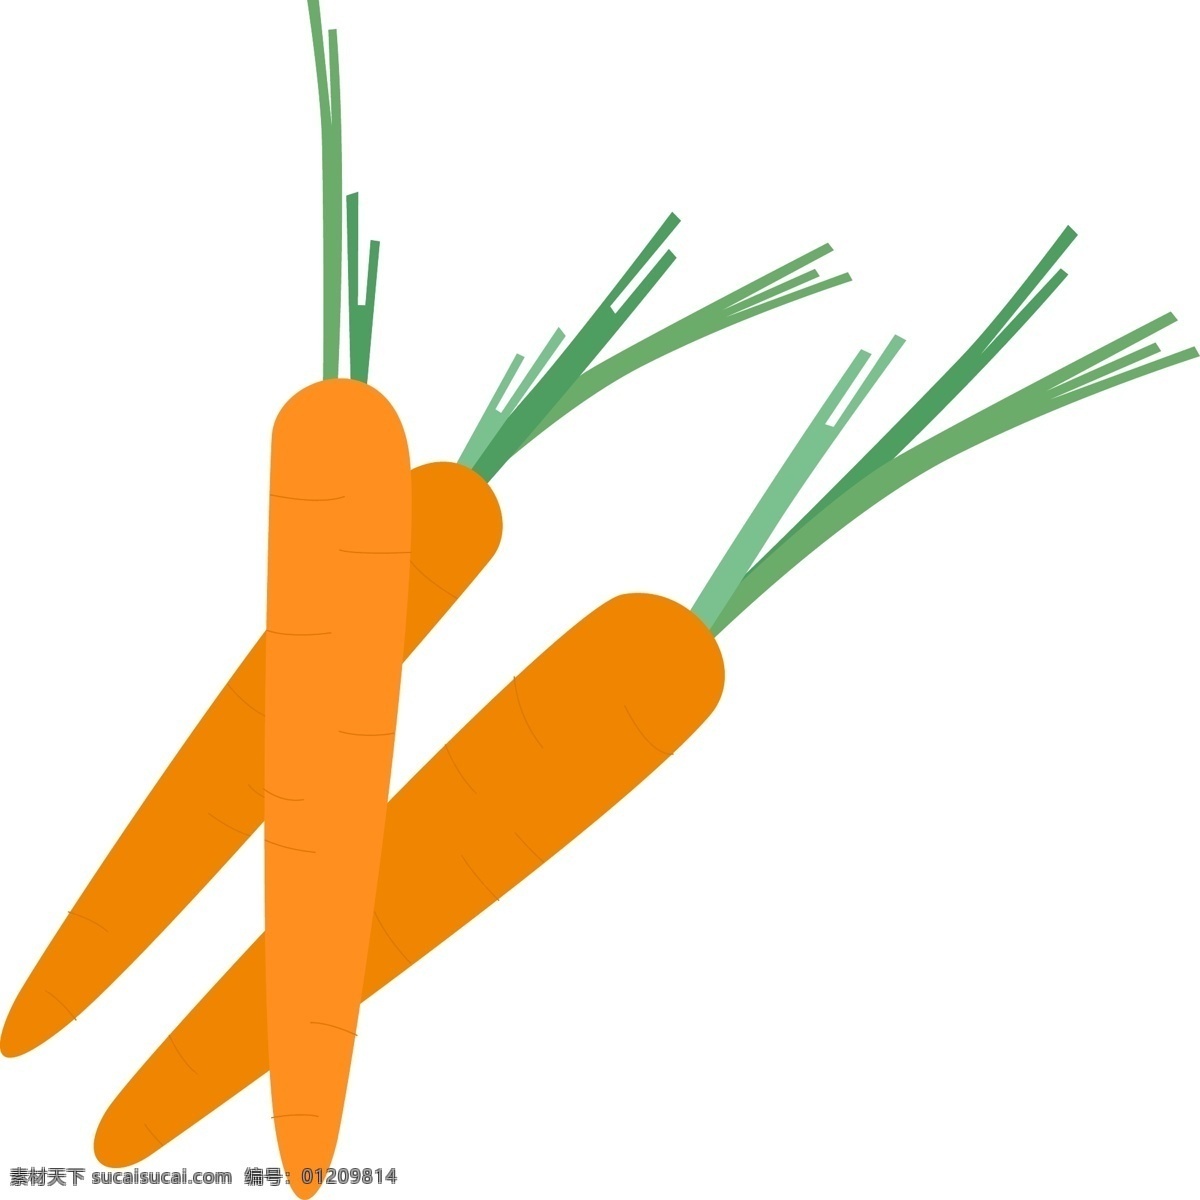 处暑 夏季 蔬果 蔬菜 胡萝卜 图标 野菜 美味的蔬菜 卡通图标 矢量图 免扣装饰 手绘图标 图形